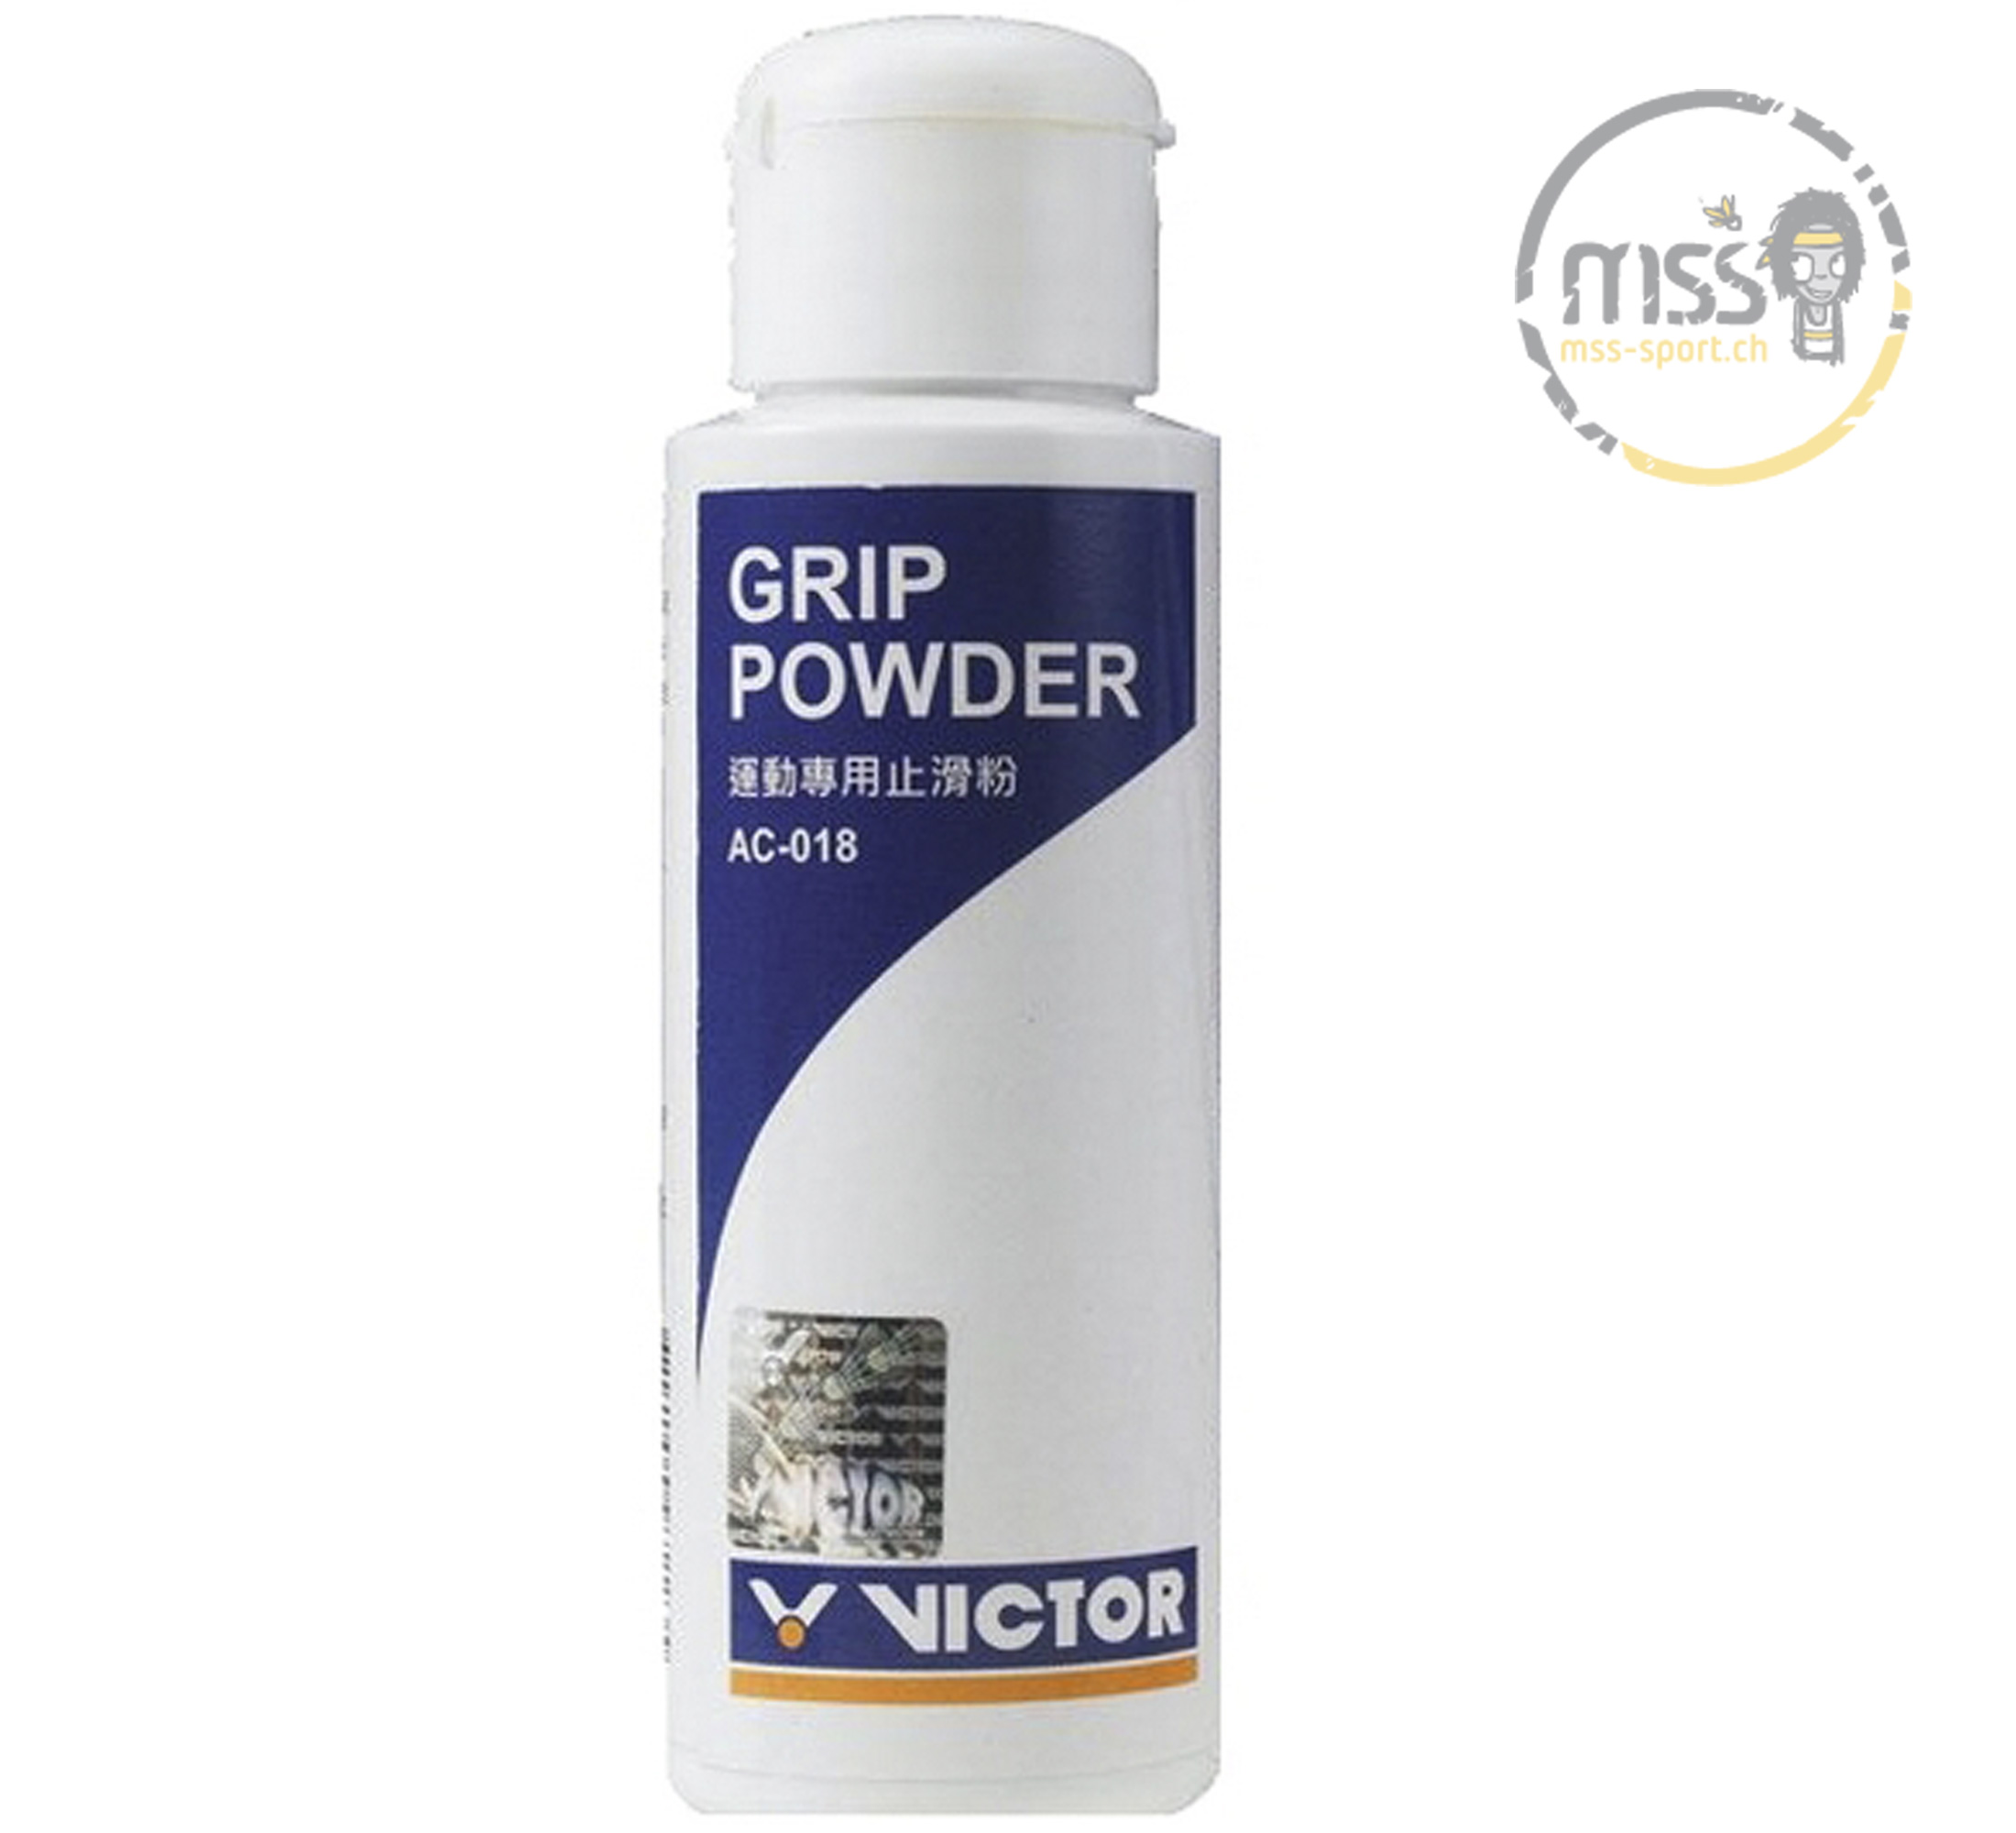 Victor Grip Powder AC-018